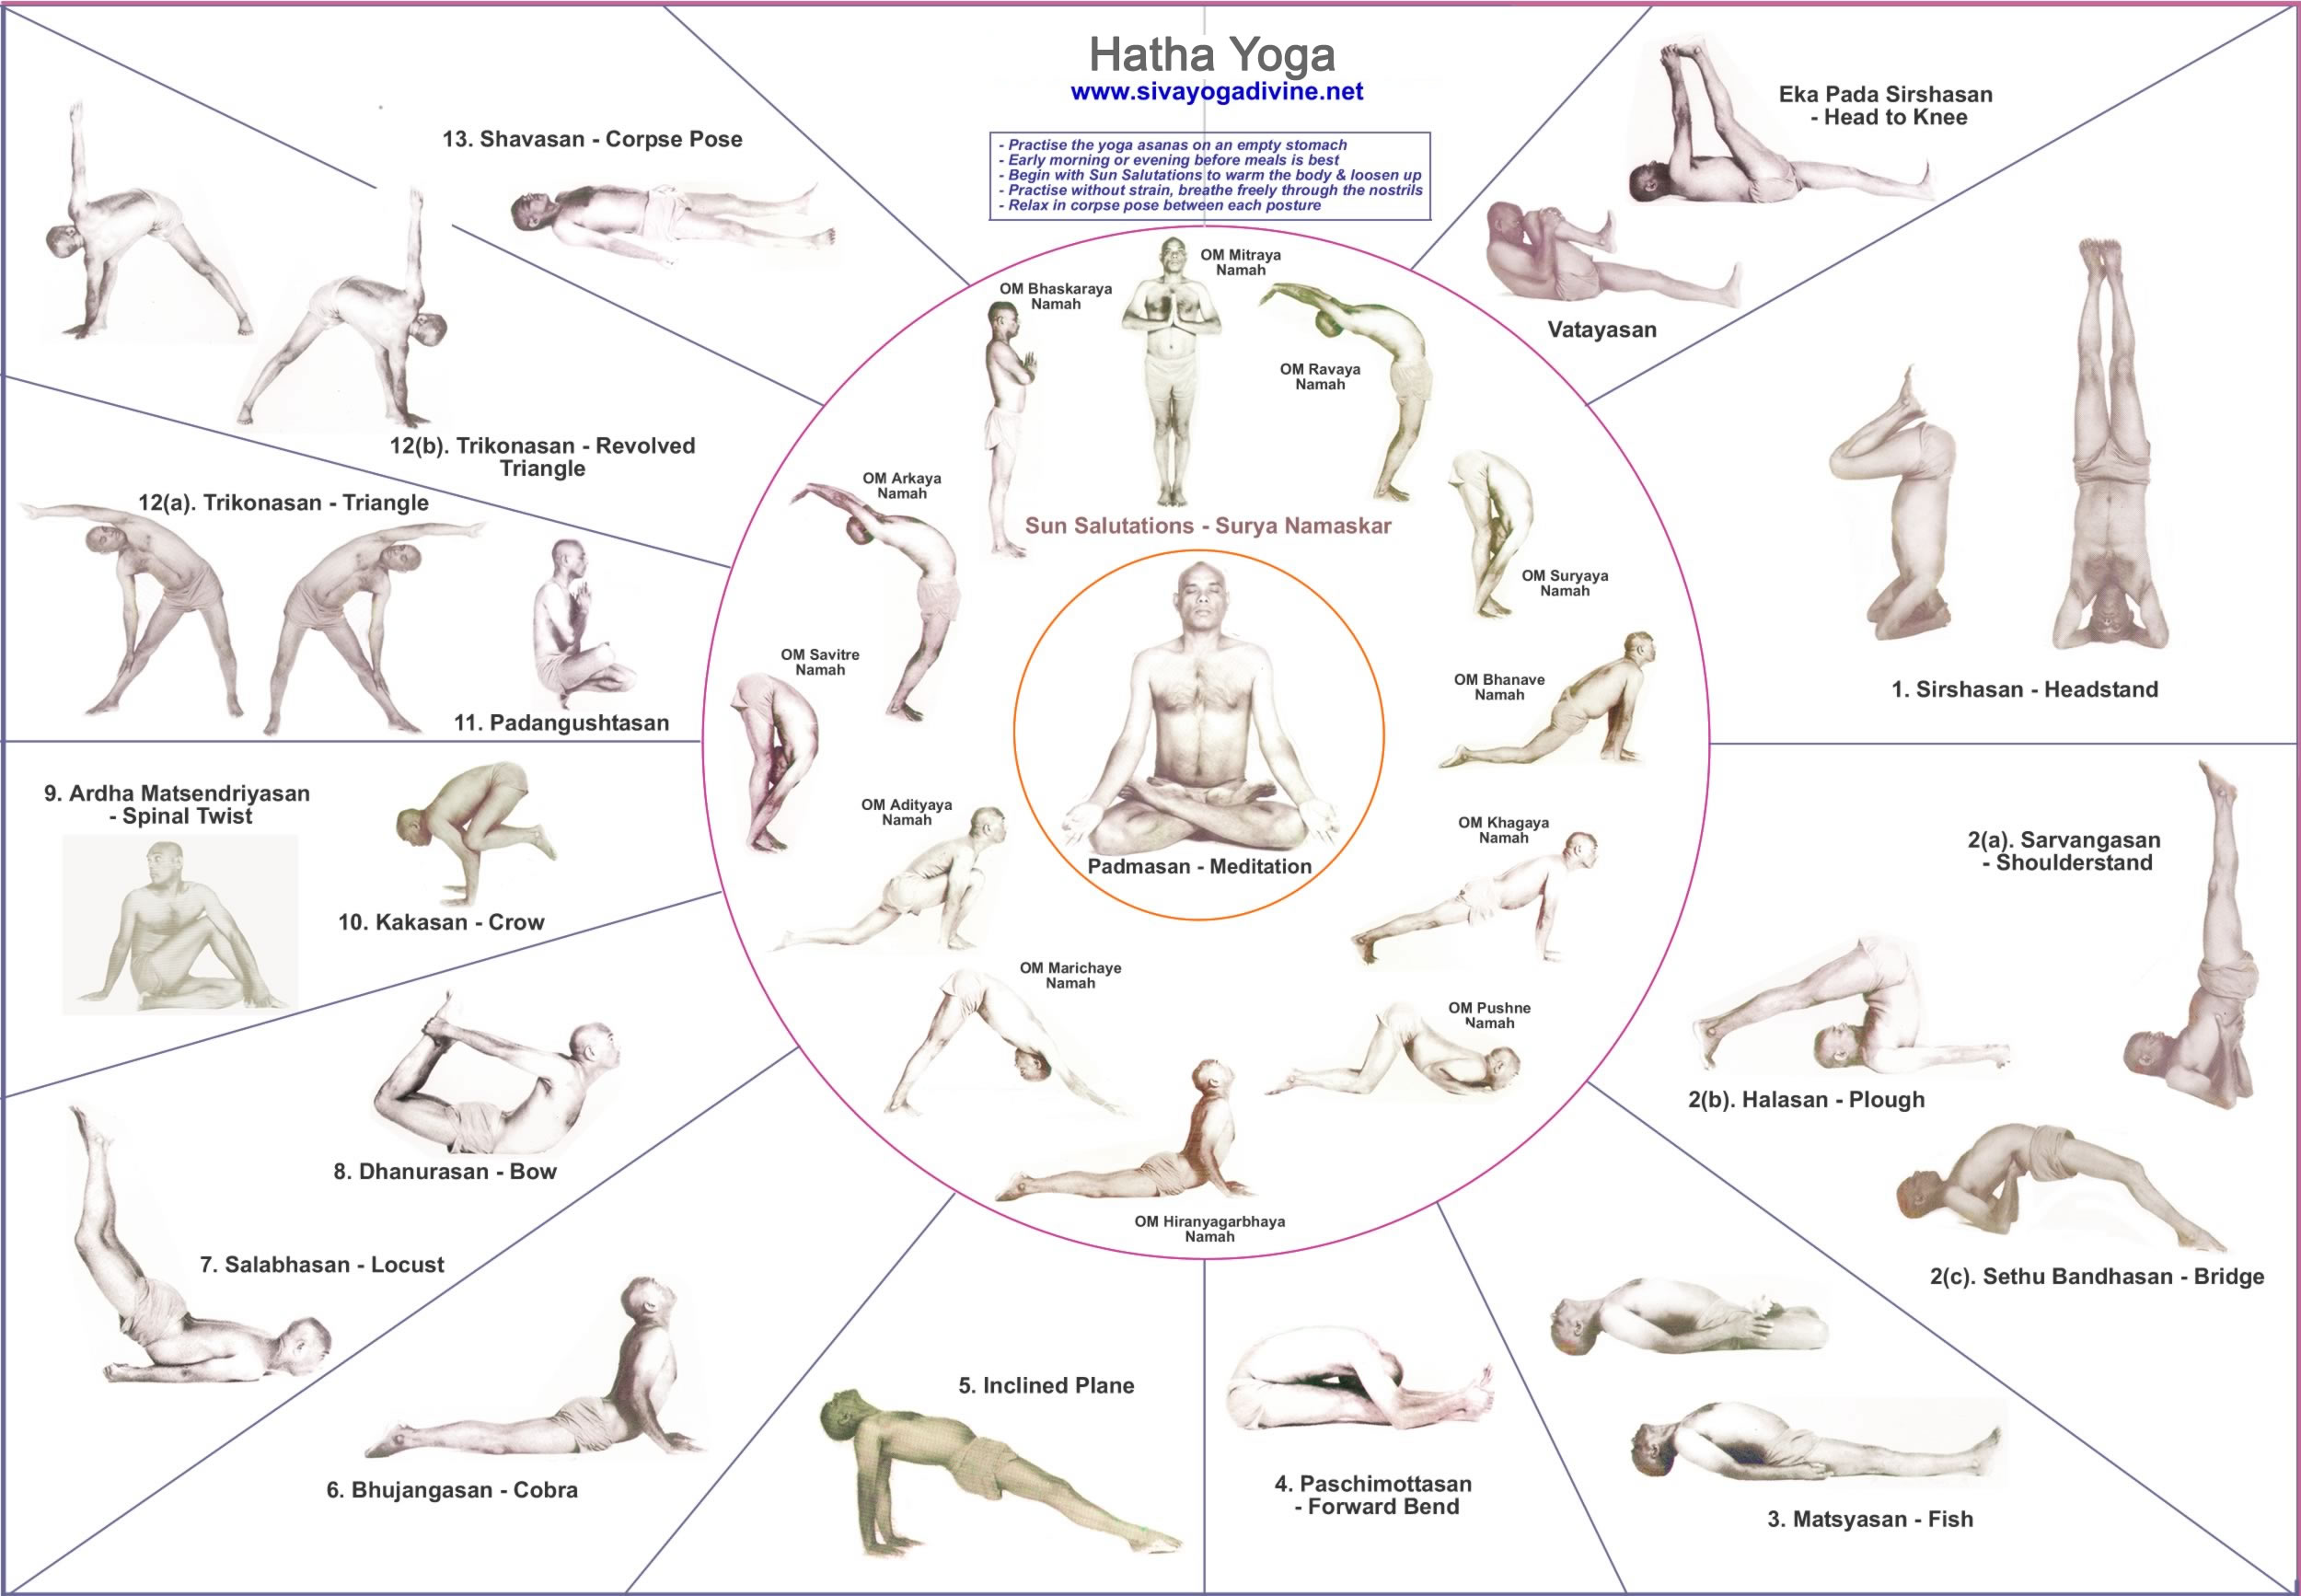 75 Yoga Poses PDF 8.5x11 - Etsy | Yoga poses chart, Yoga poses names, Yoga  poses